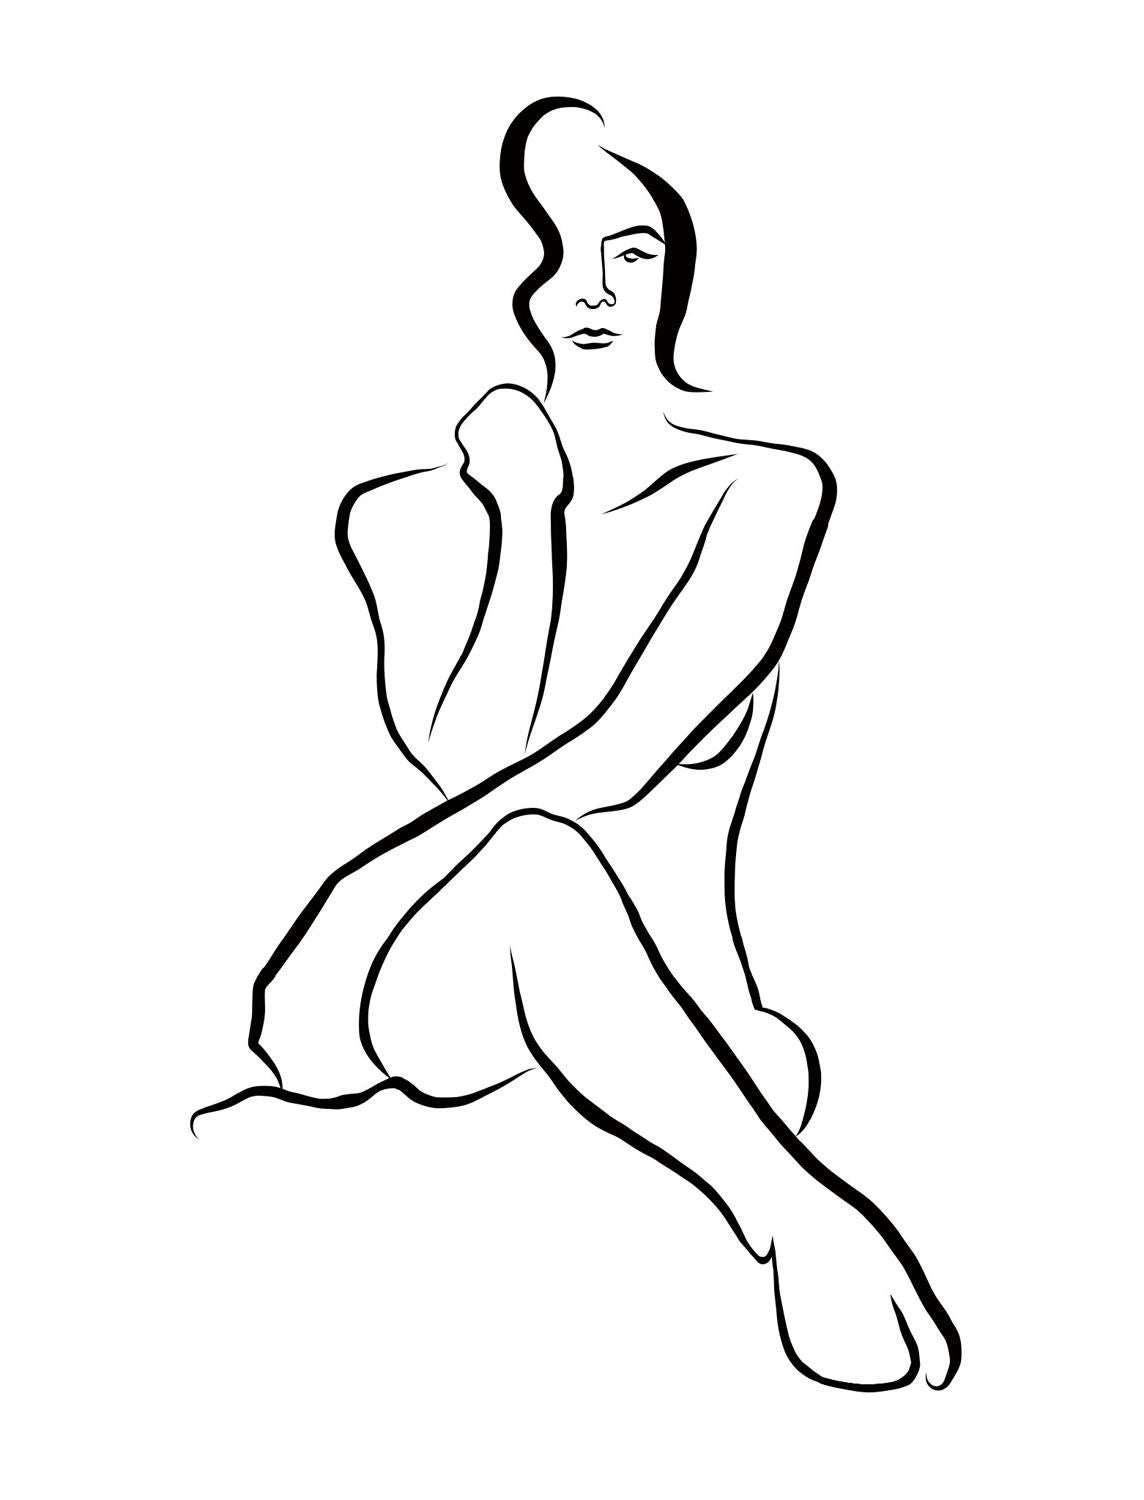 Haiku n° 22, 5/50 - Dessin numérique représentant un visage de femme nue assise